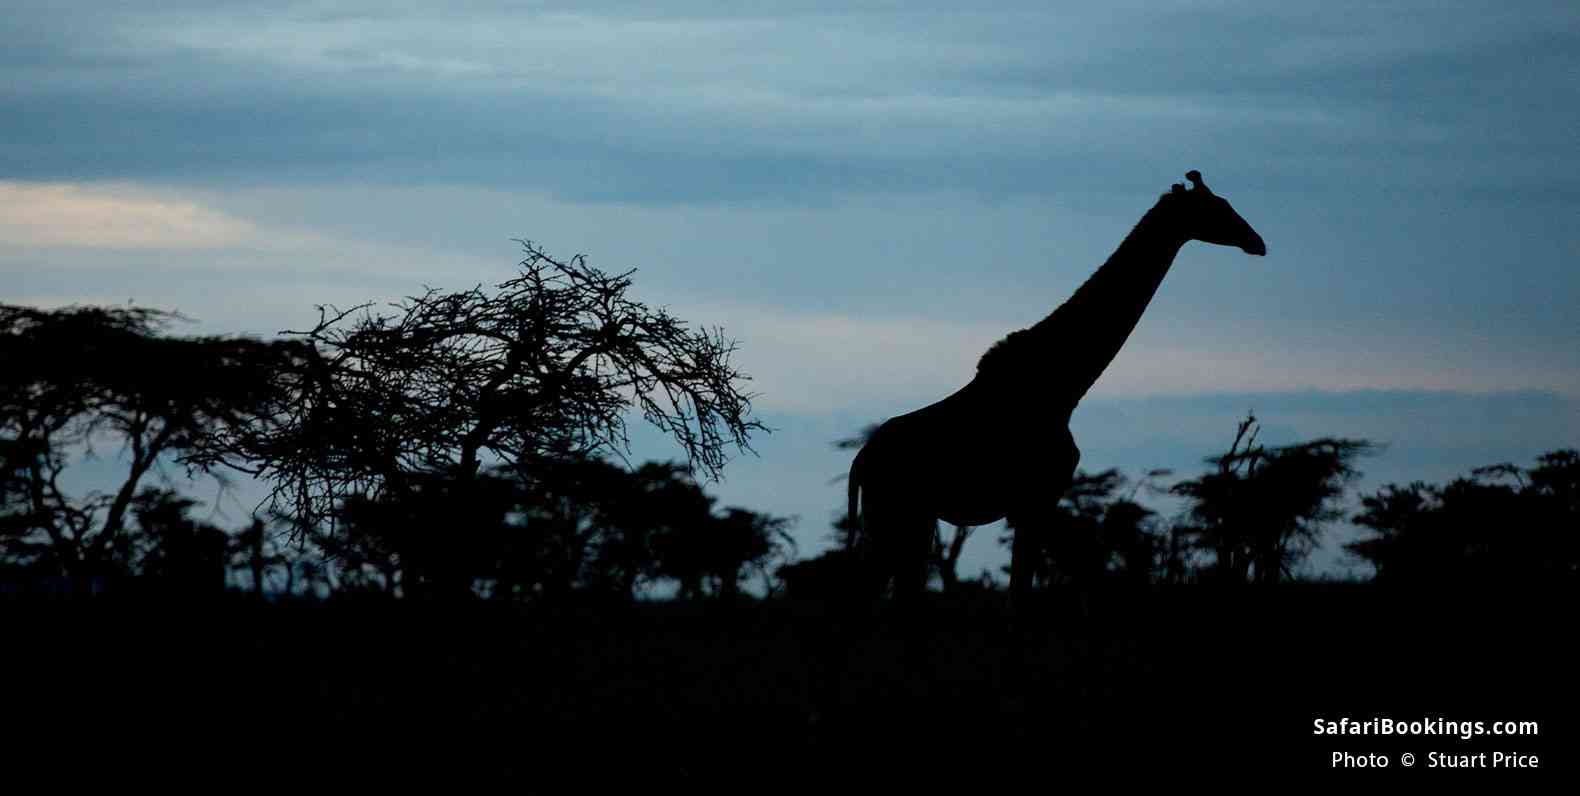 Giraffe silhouette at dusk